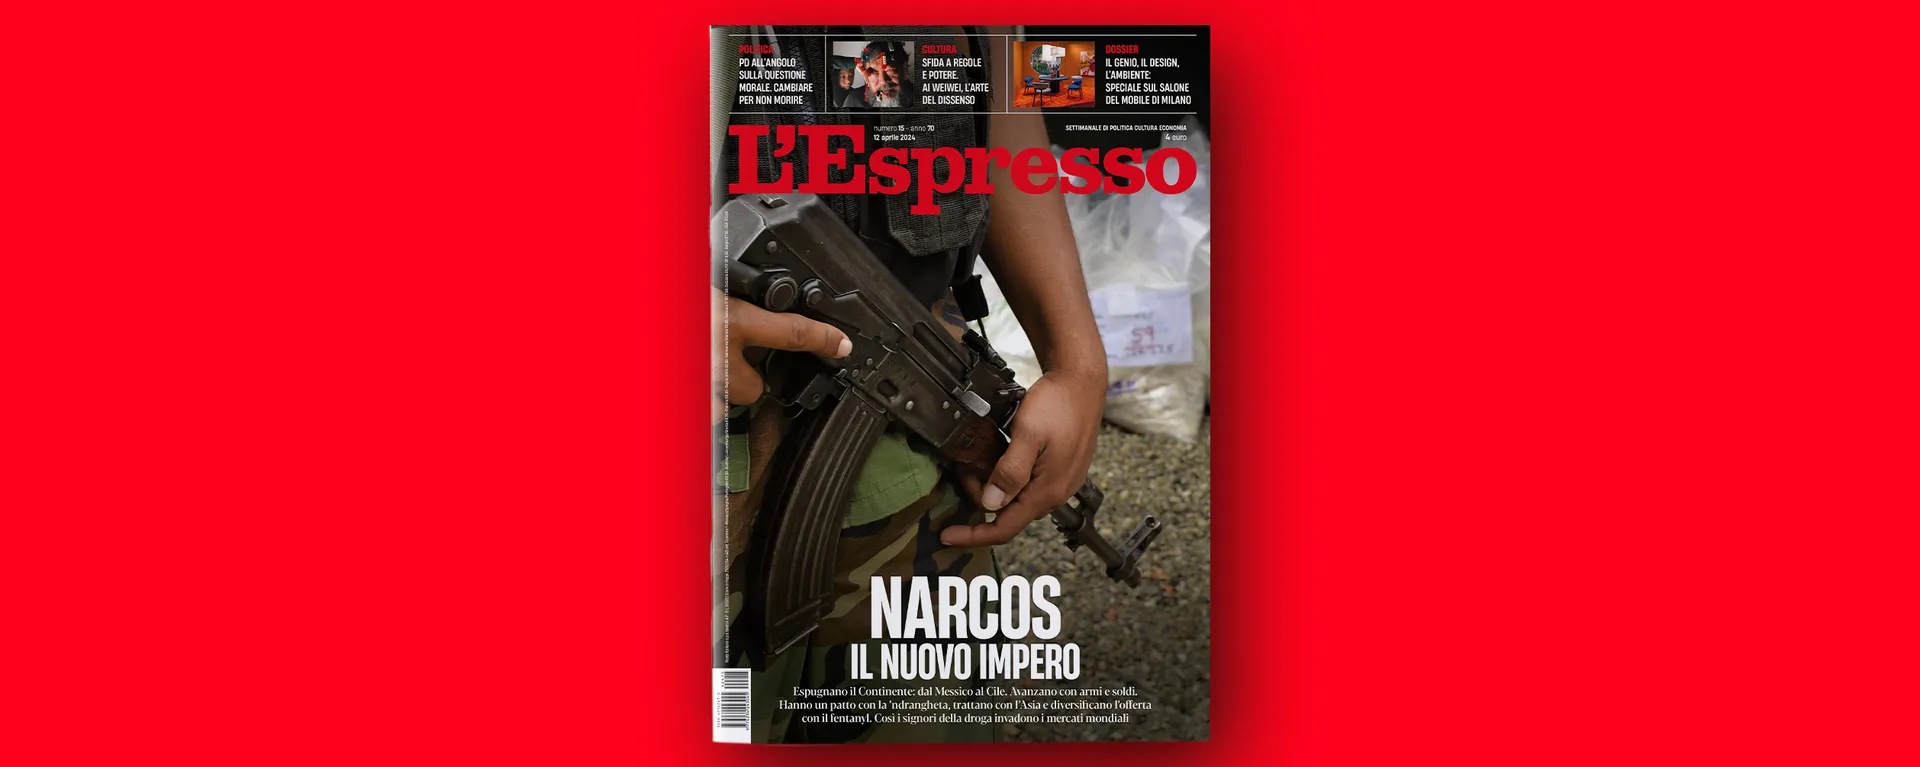 Narcos, il nuovo impero, L’Espresso in edicola